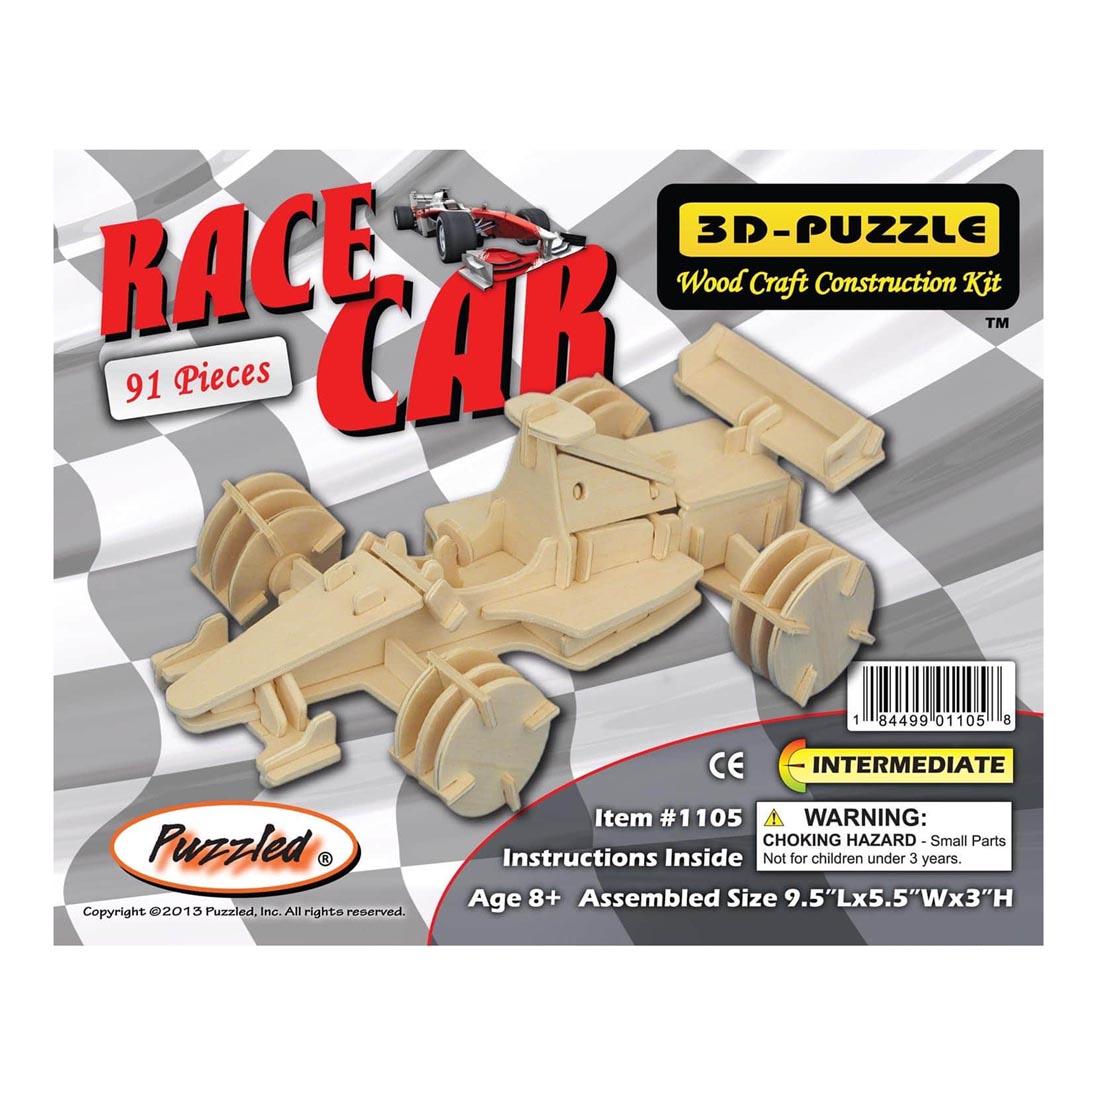 Racecar 3D Wooden Puzzle